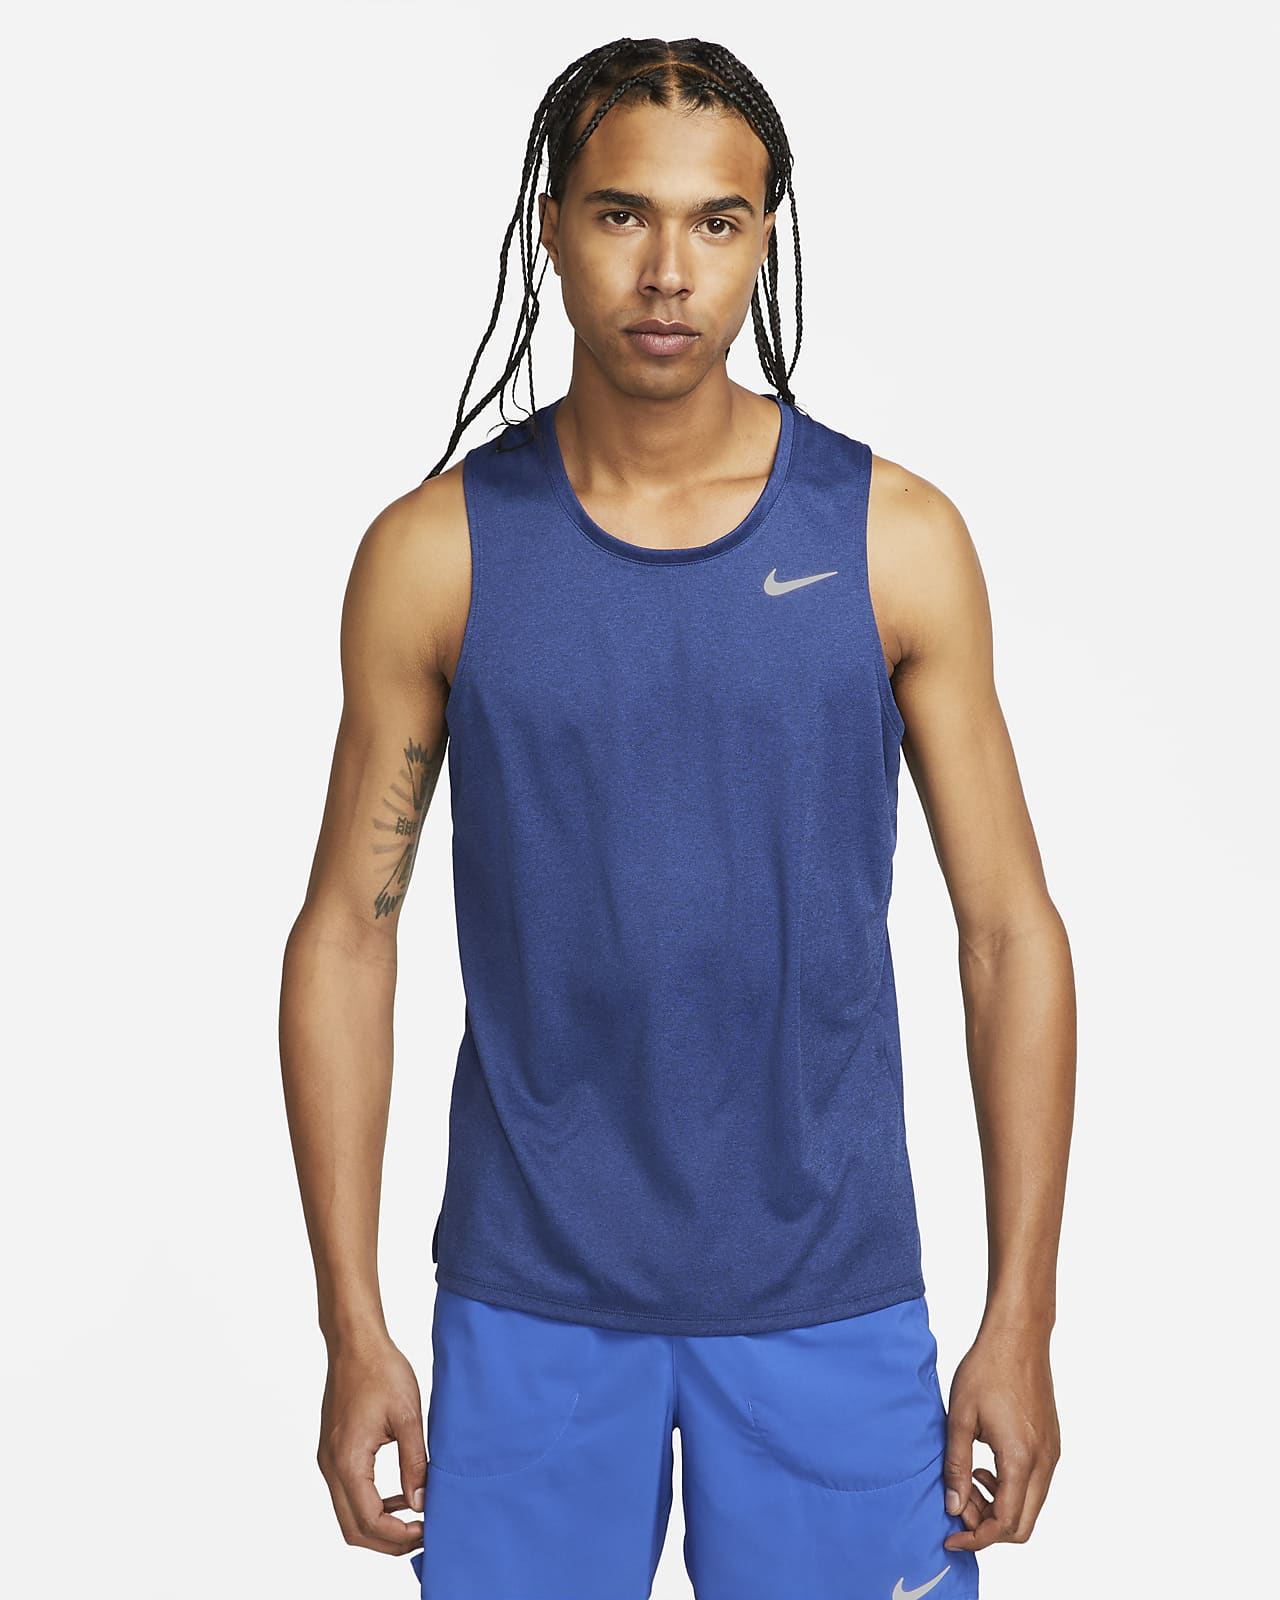 Excentriek aanvaardbaar bekennen Nike Miler Men's Dri-FIT Running Tank Top. Nike LU